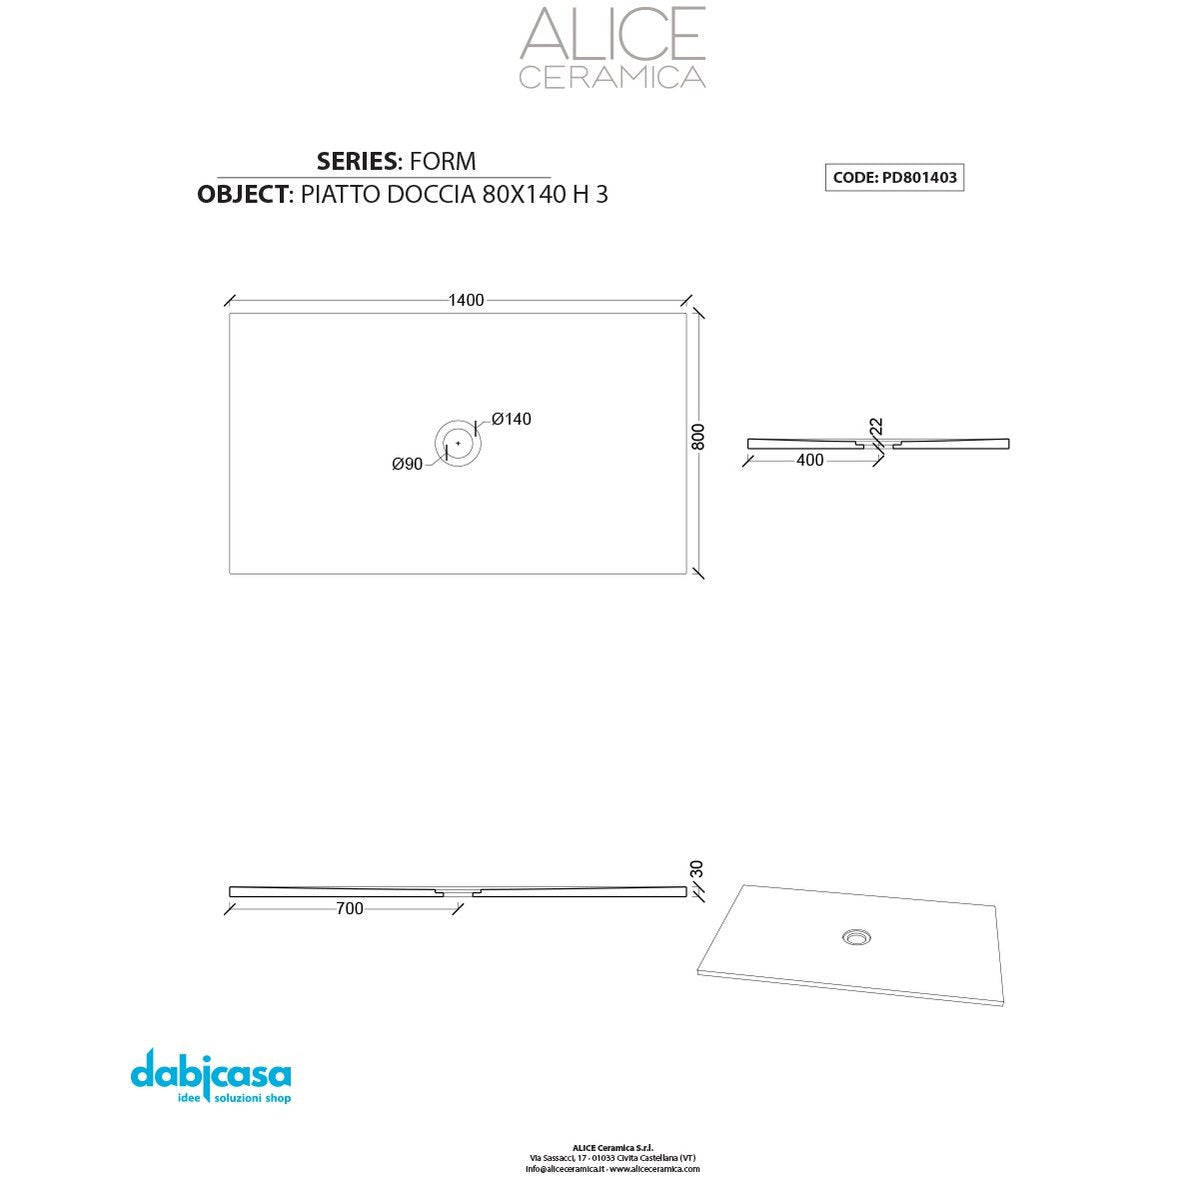 Piatto Doccia Alice Ceramica "Serie Form" 80x140 cm h 3 Colore Nero Opaco freeshipping - Dabicasa